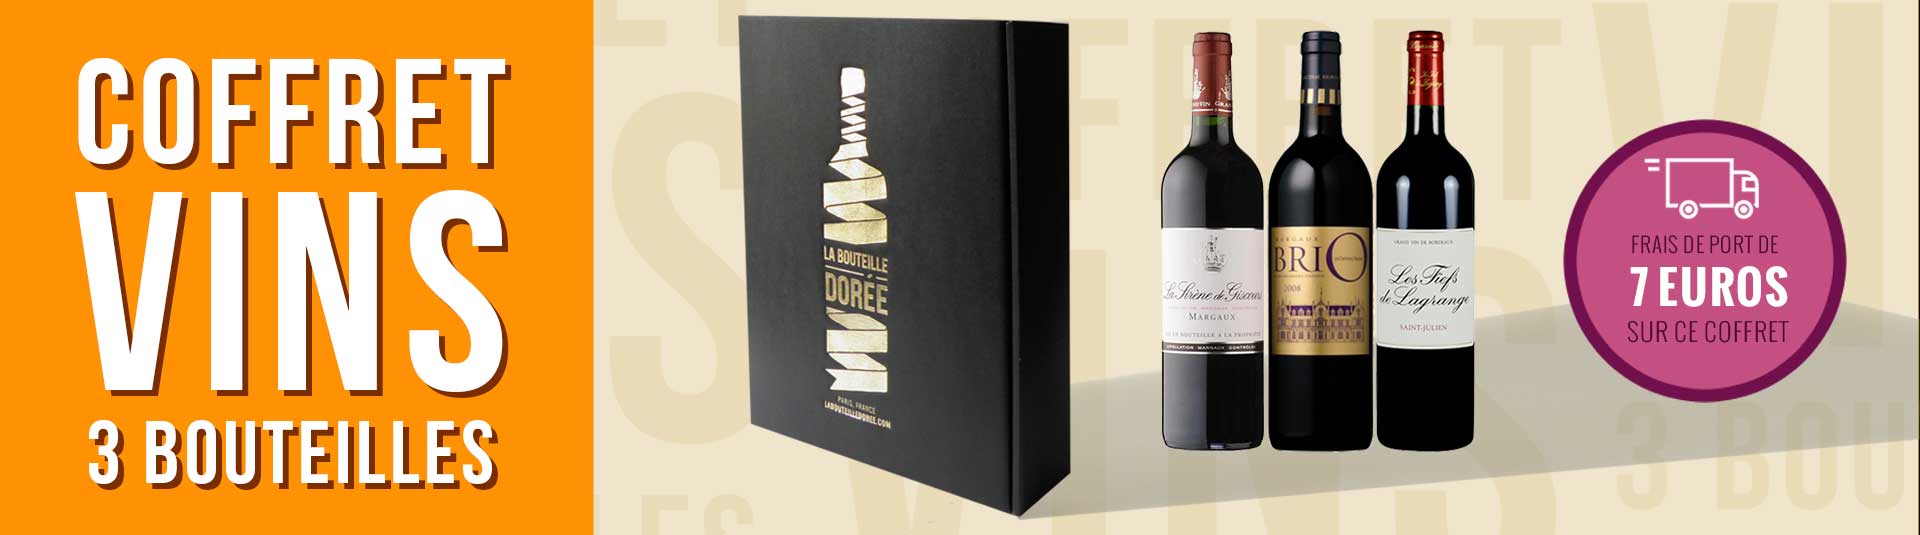 coffret vin Bordeaux seconds vins 3 bouteilles